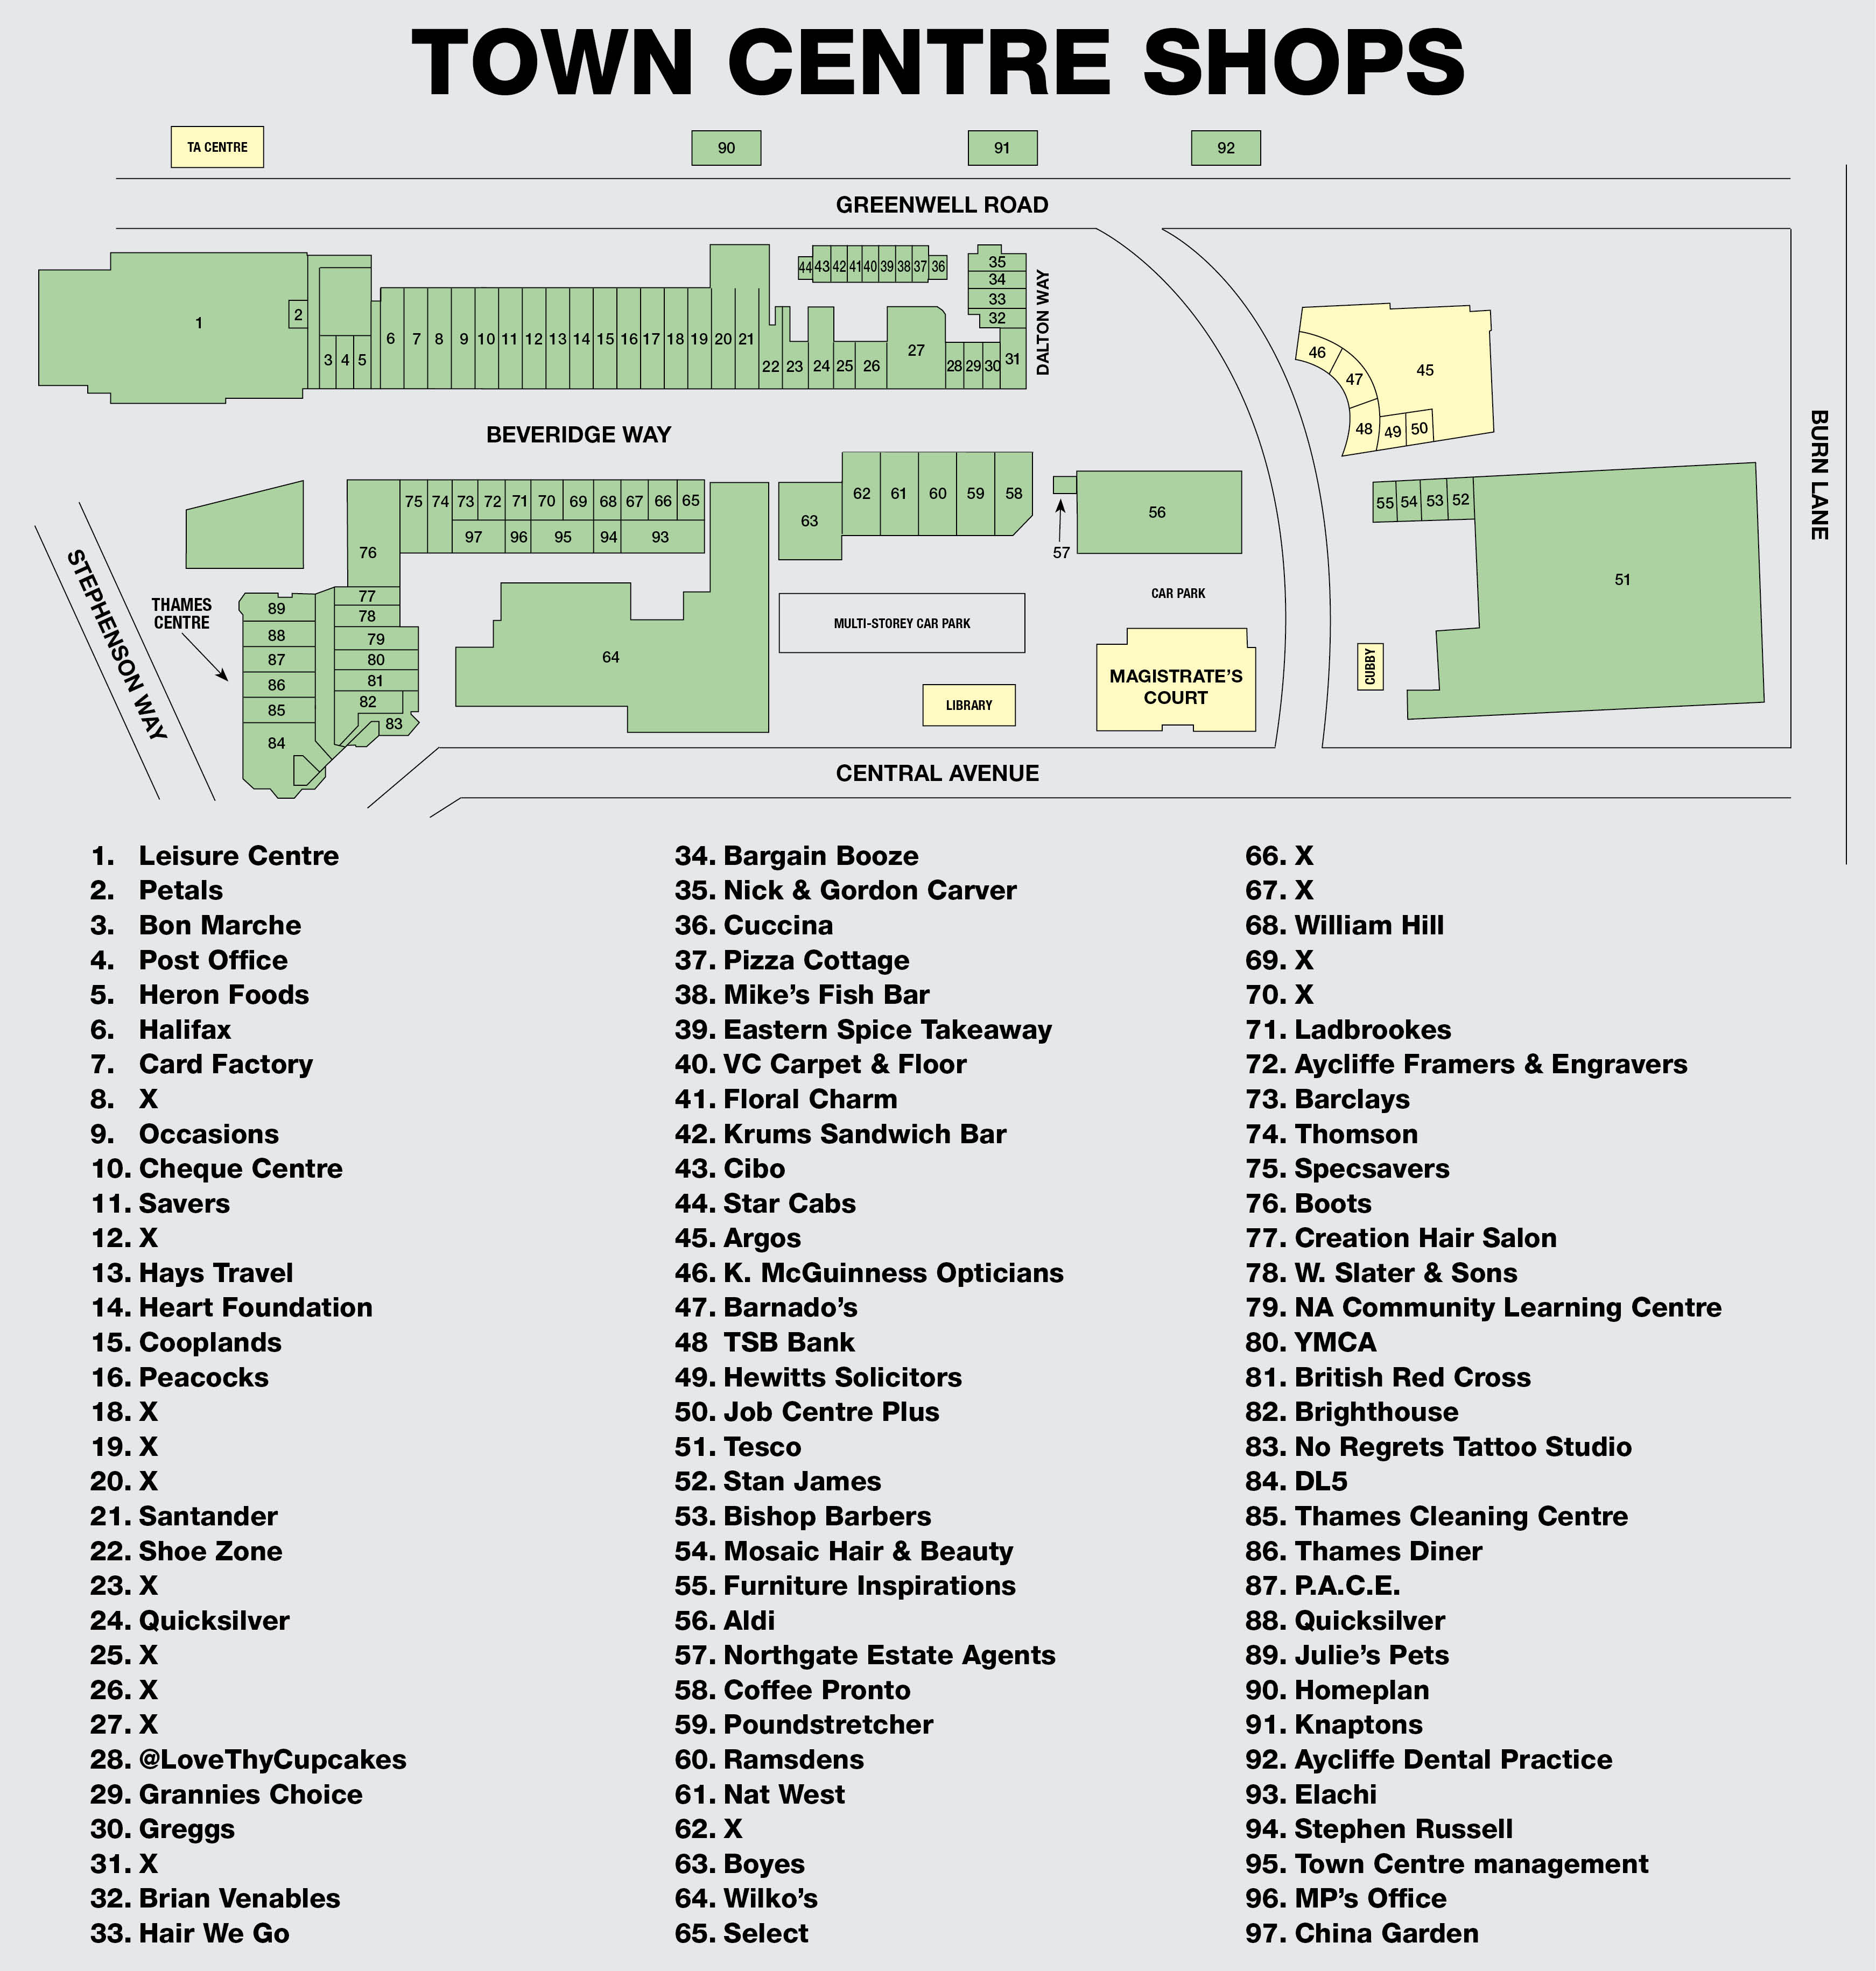 Town Centre Shops